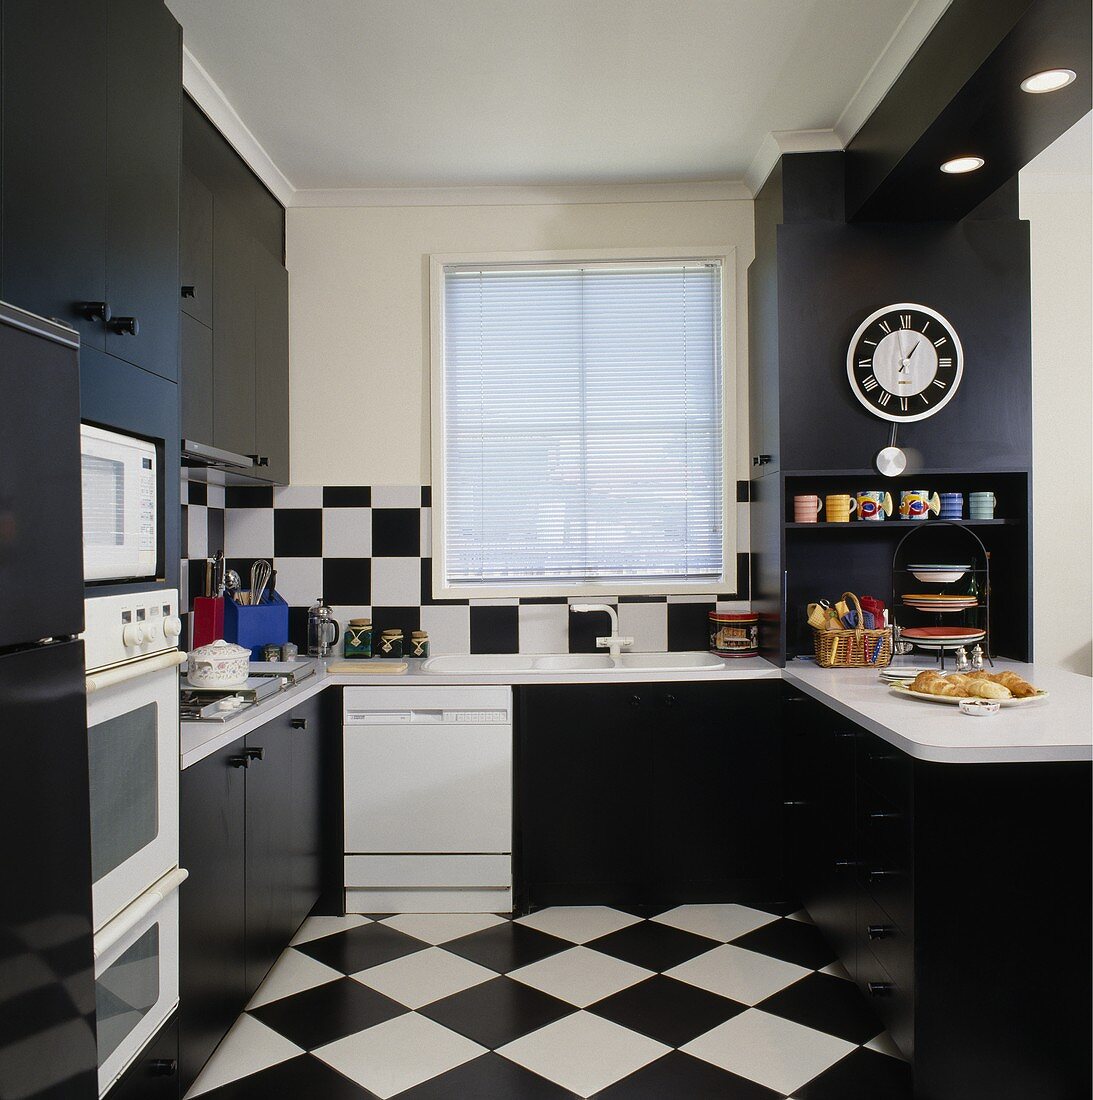 Schwarz-weiße Wand- und Bodenfliesen in Schachbrettmuster, schwarze Küchenschränke und weiße Küchengeräte